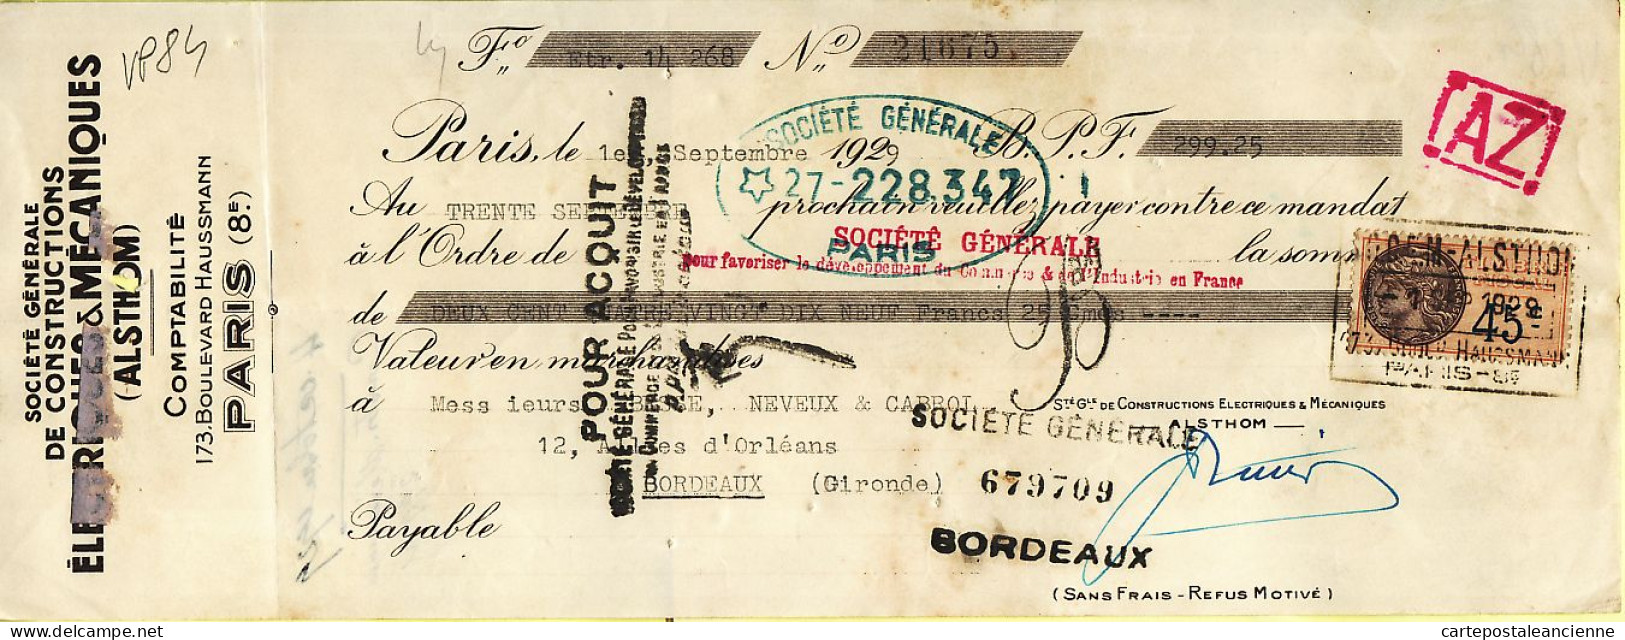 31300 / PARIS ALSTHOM Constructions Electriques Boulevard Haussmann Mandat-Chèque 1929 à BESSE NEVEUX CABROL - Cheques & Traveler's Cheques